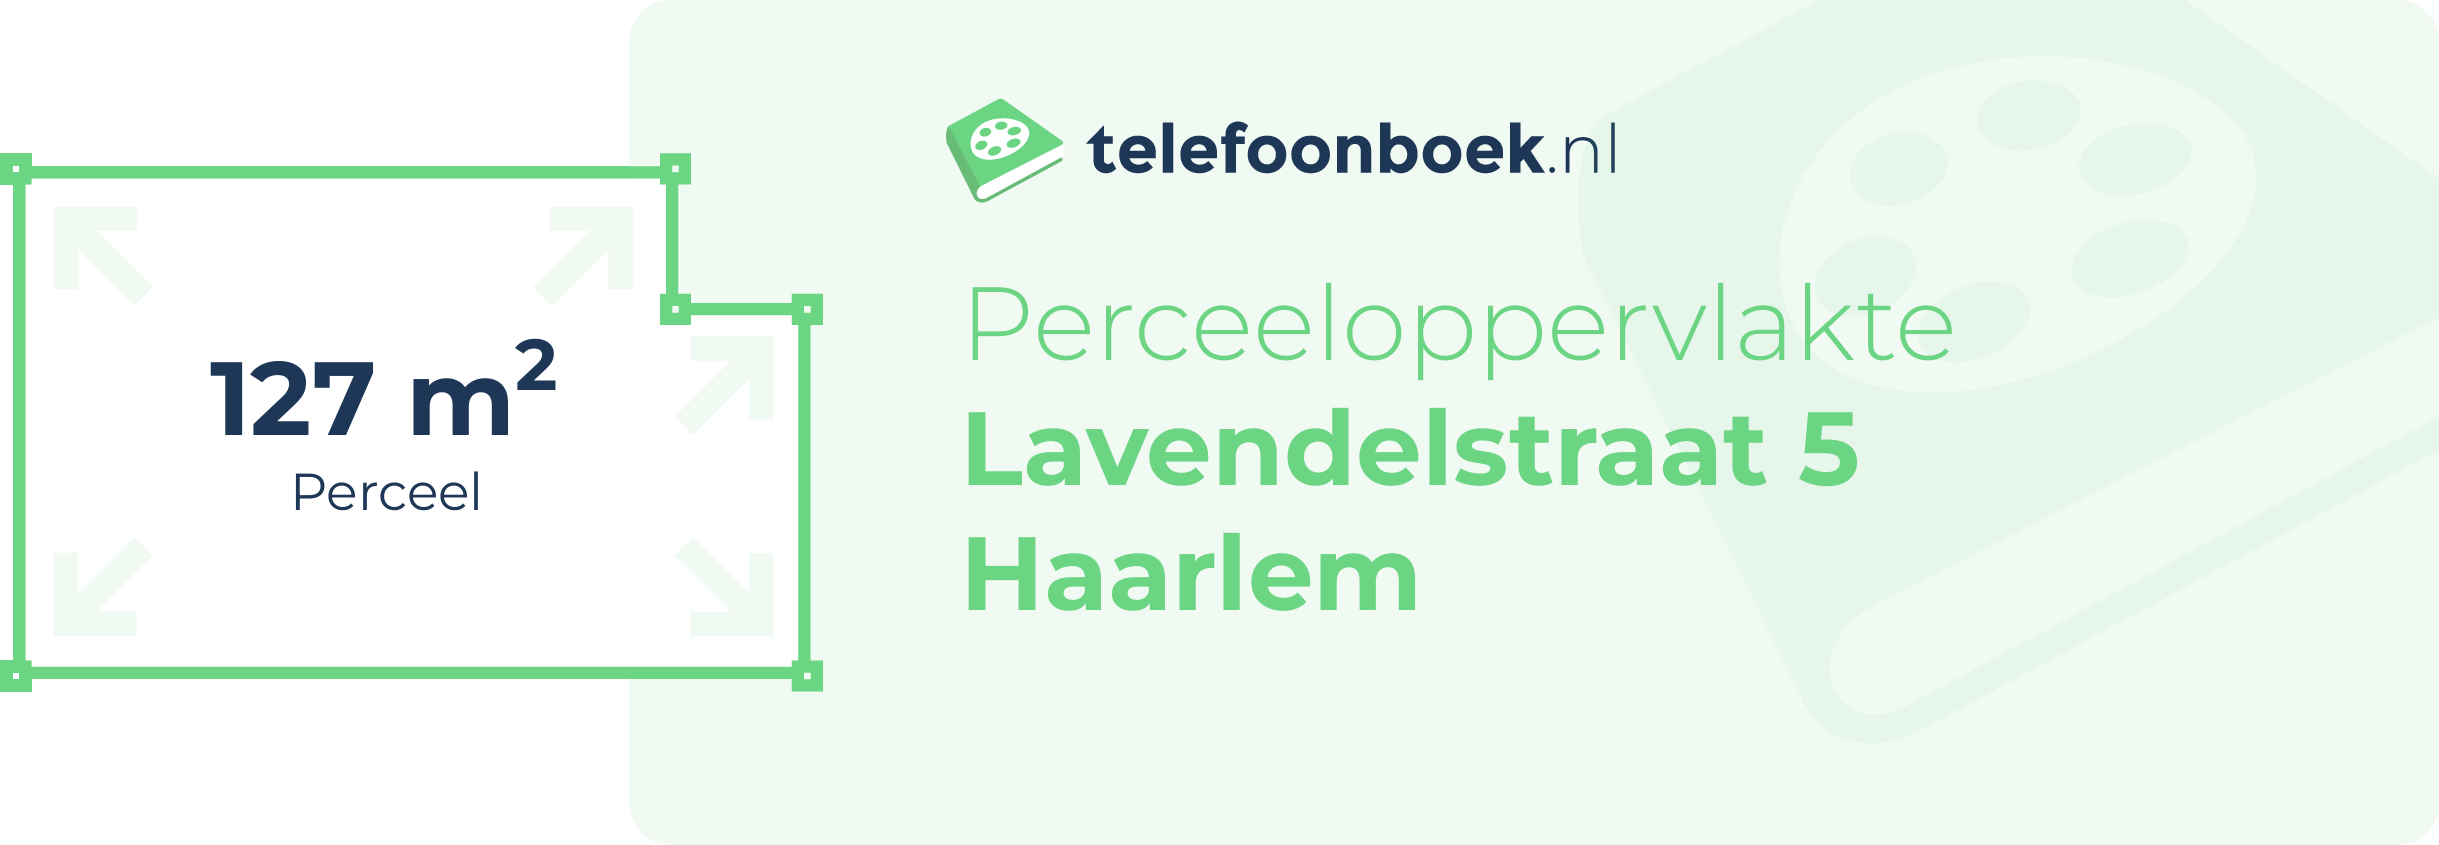 Perceeloppervlakte Lavendelstraat 5 Haarlem